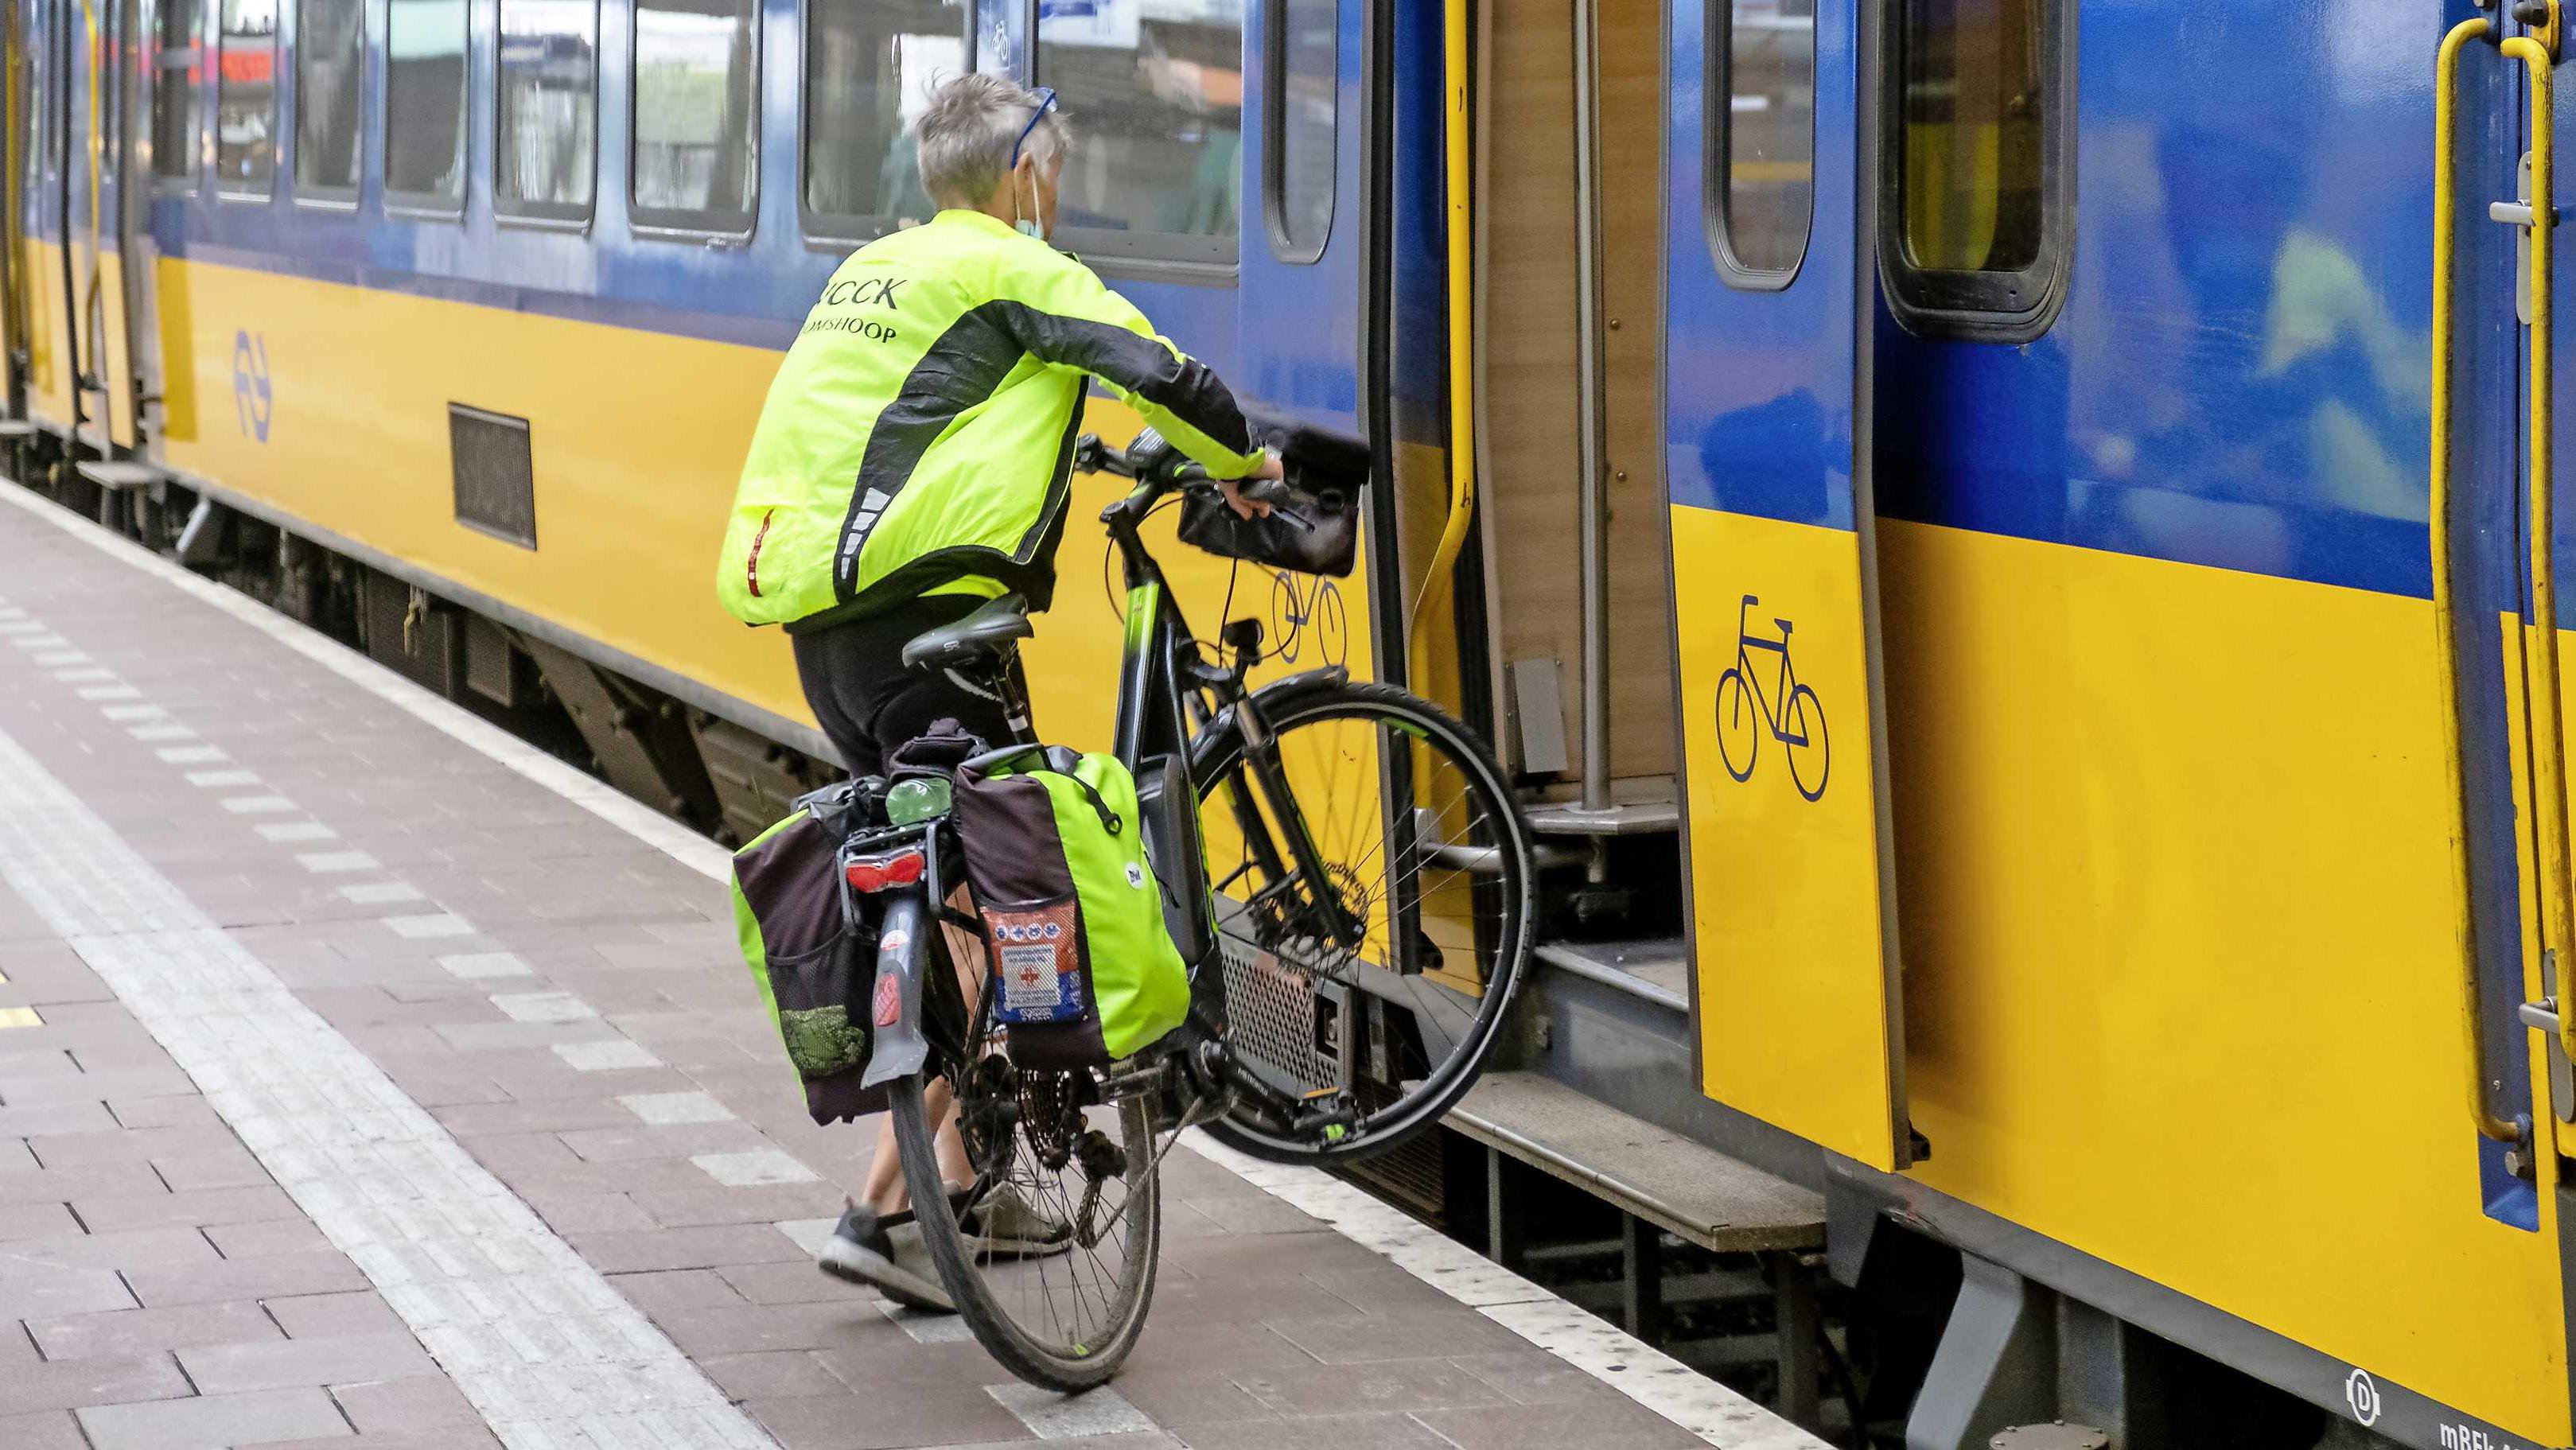 Honderden klachten over online fiets in trein Binnenland | Telegraaf.nl